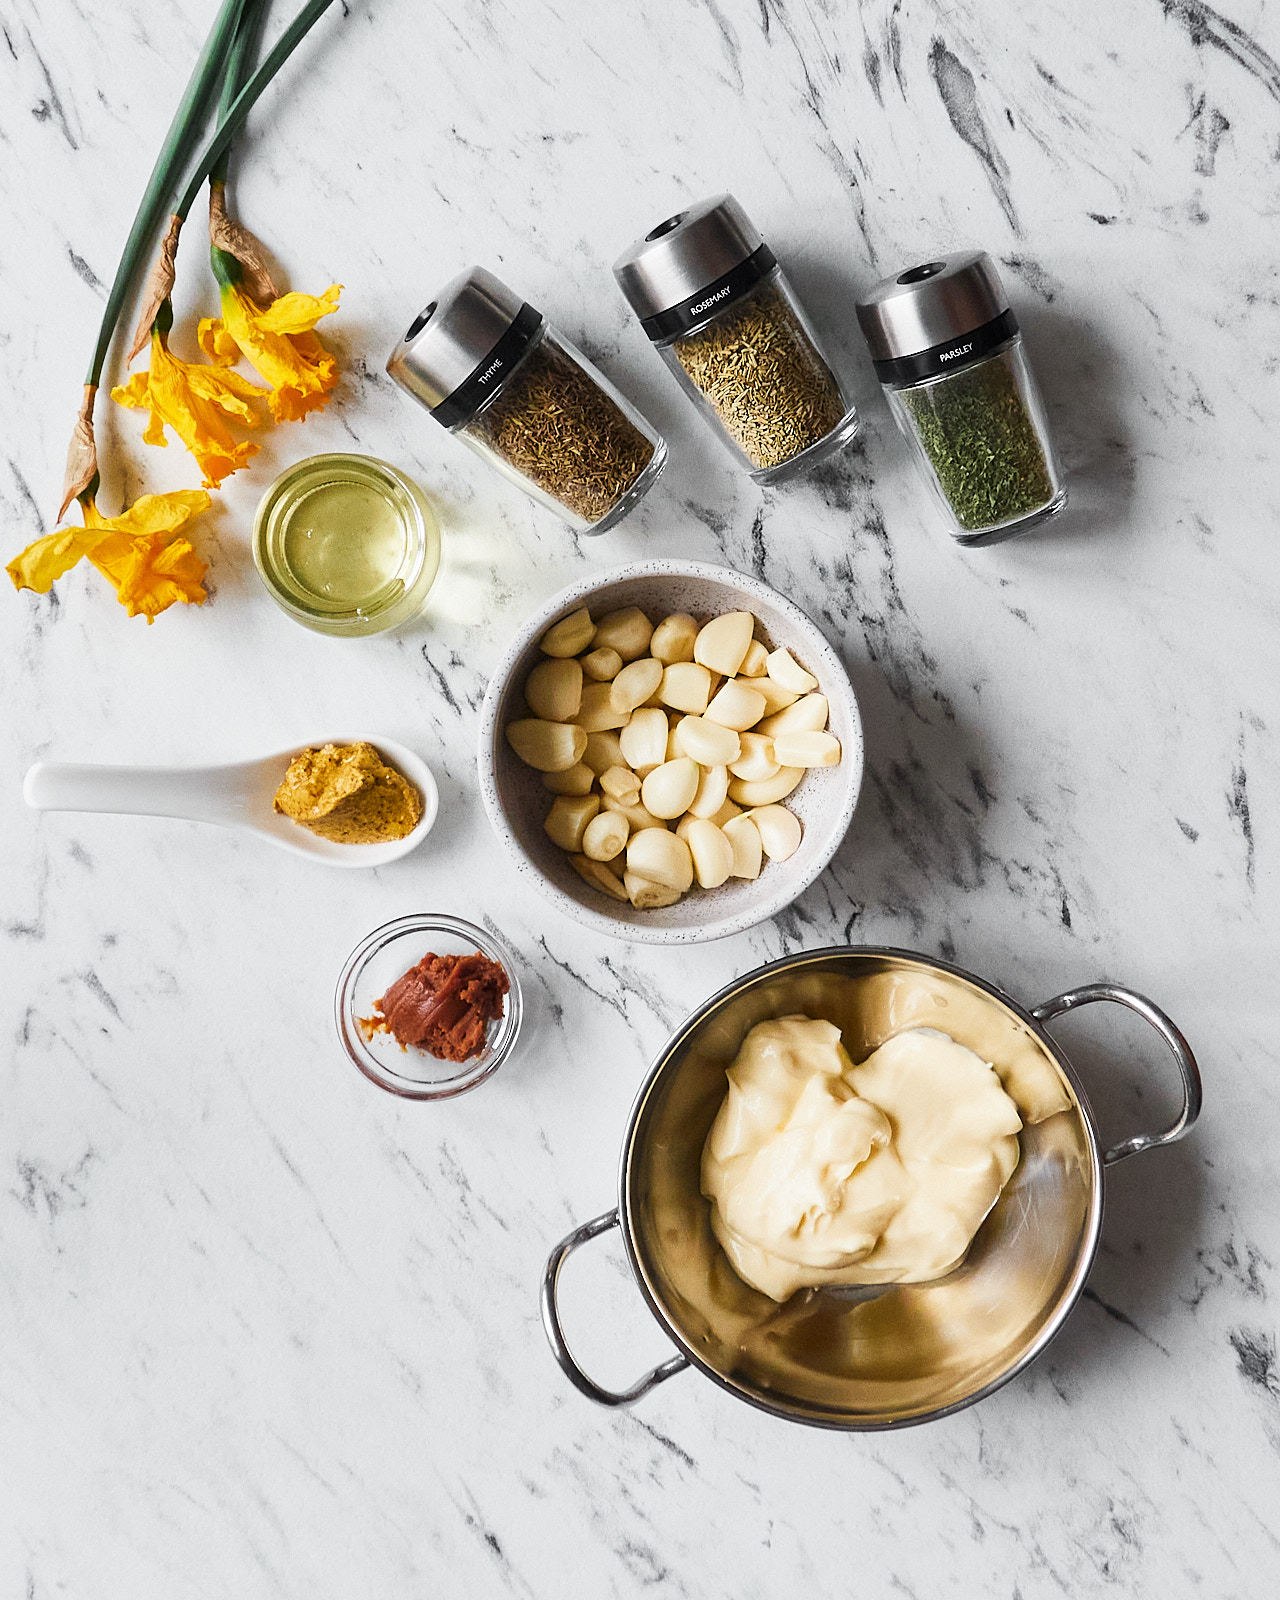 Homemade Garlic Mayonnaise Ingredients